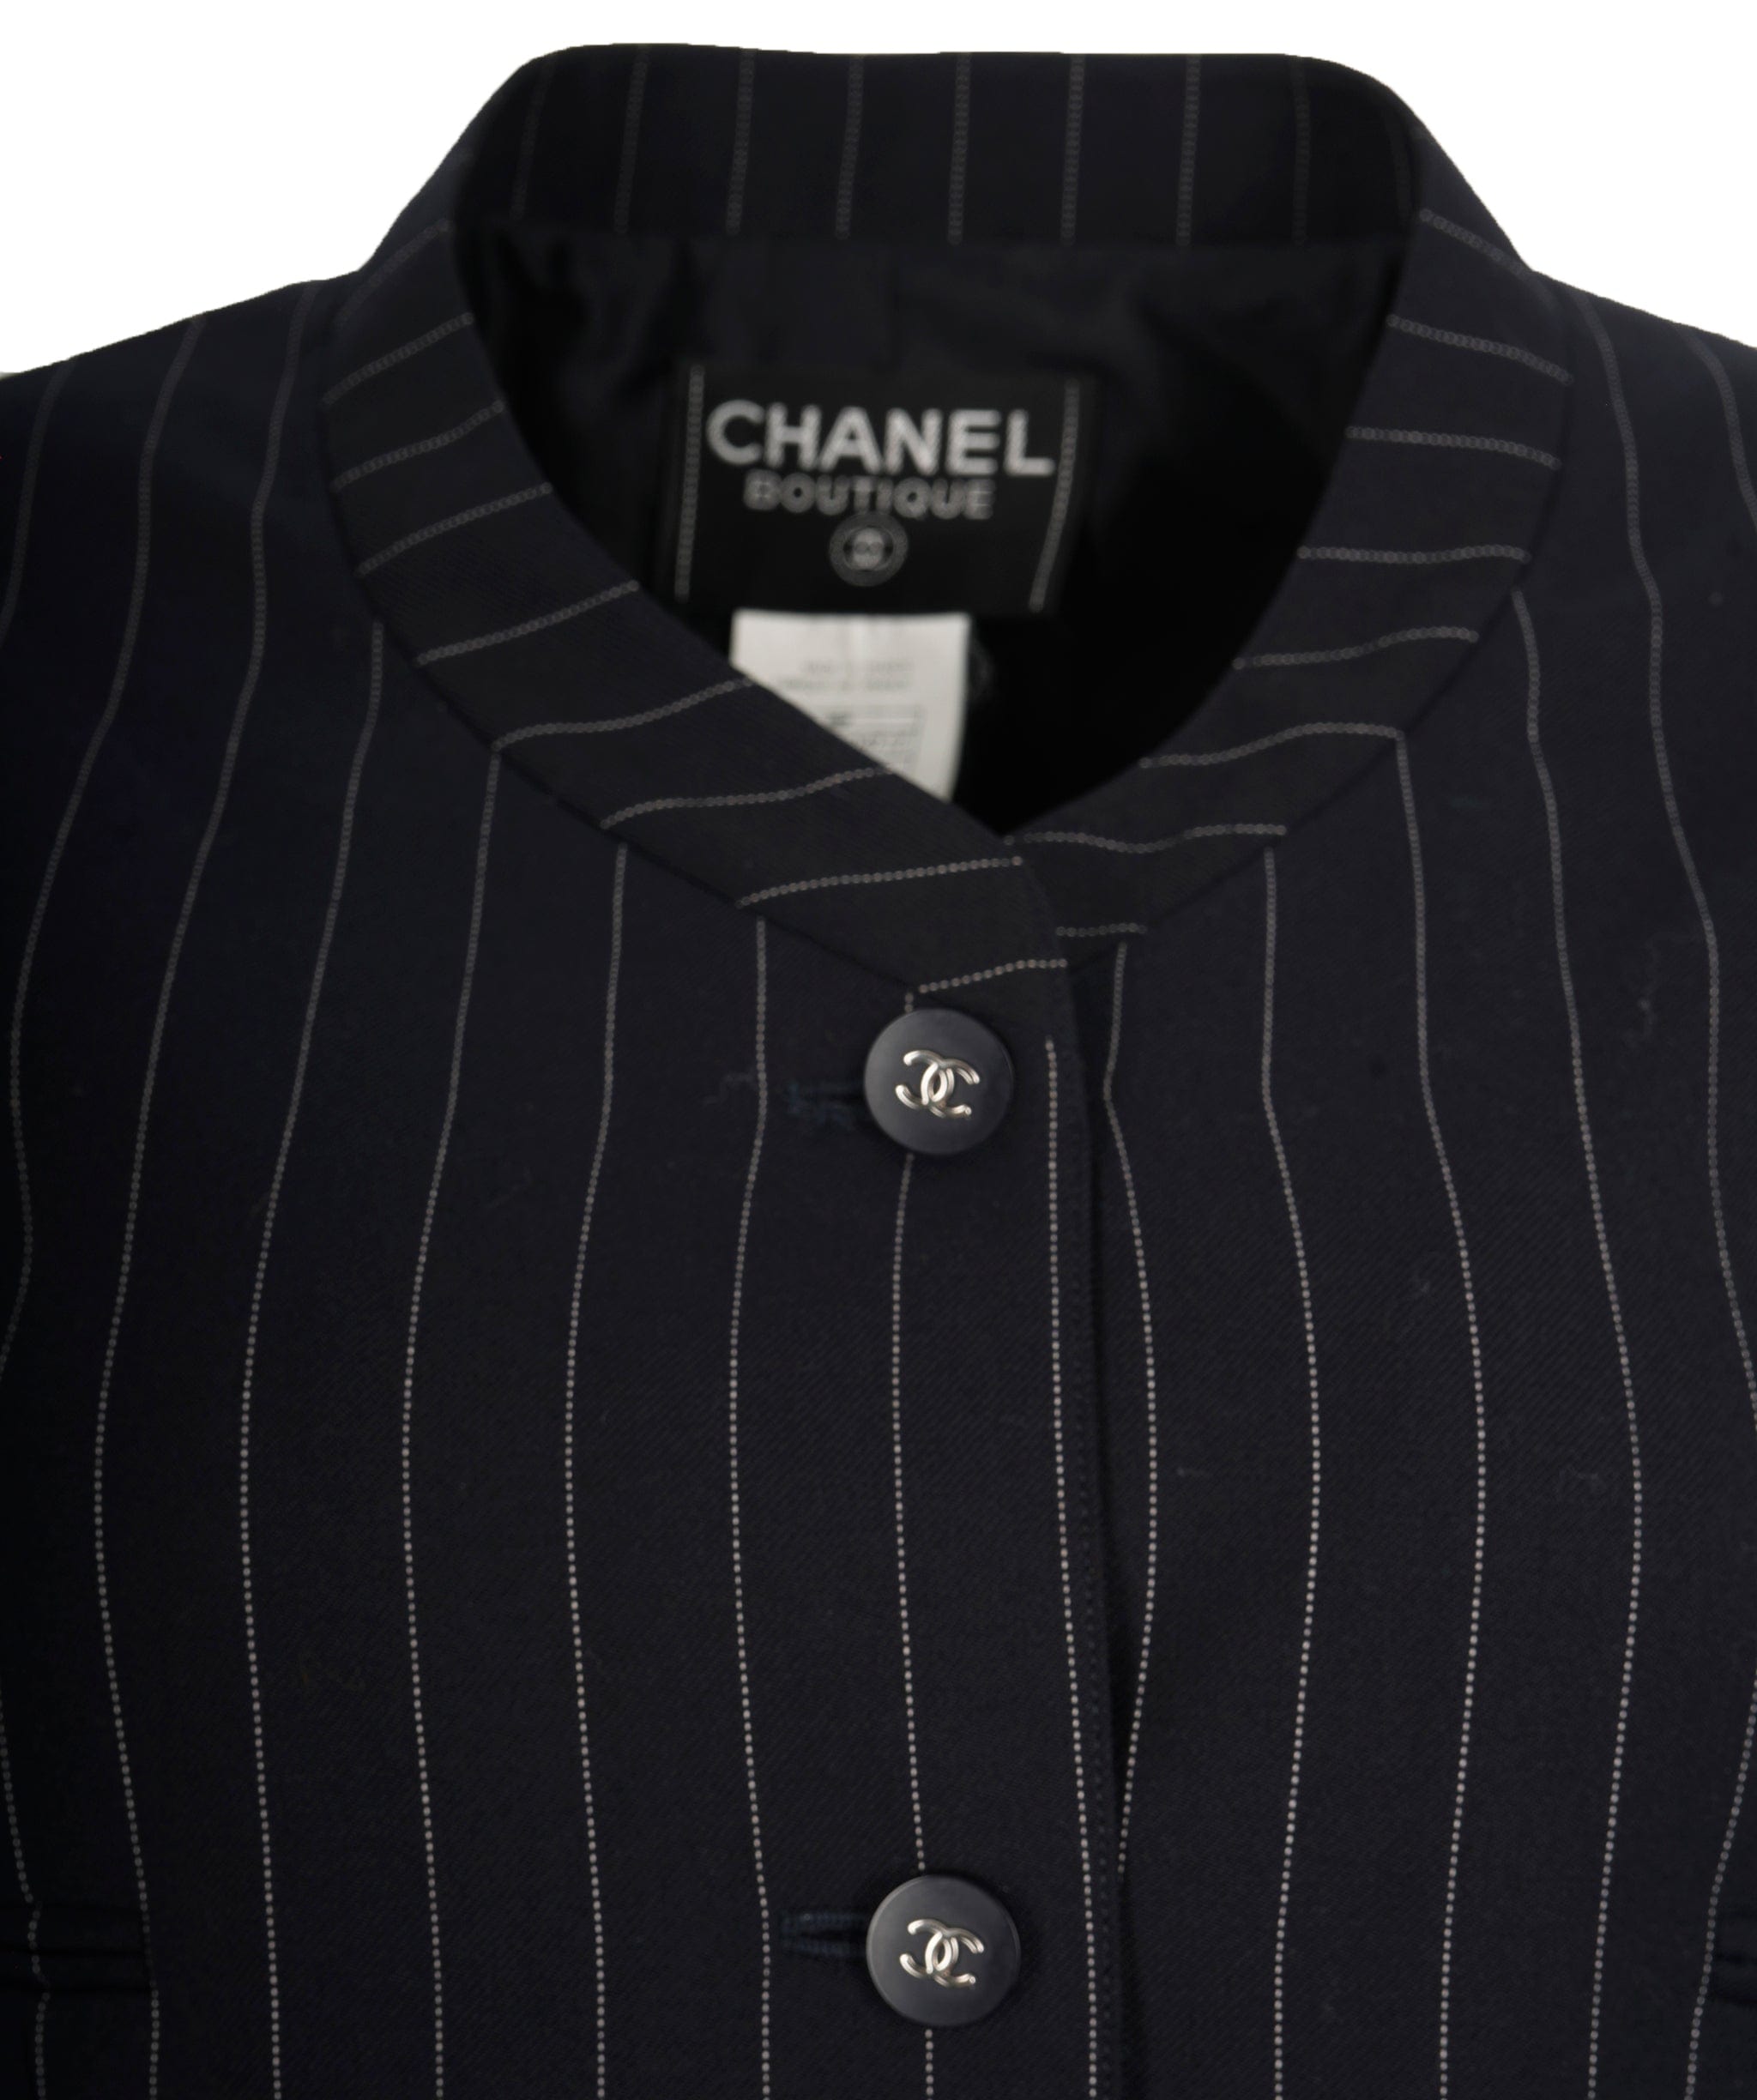 Chanel chanel stripe Blazer size 46 - AJC0672